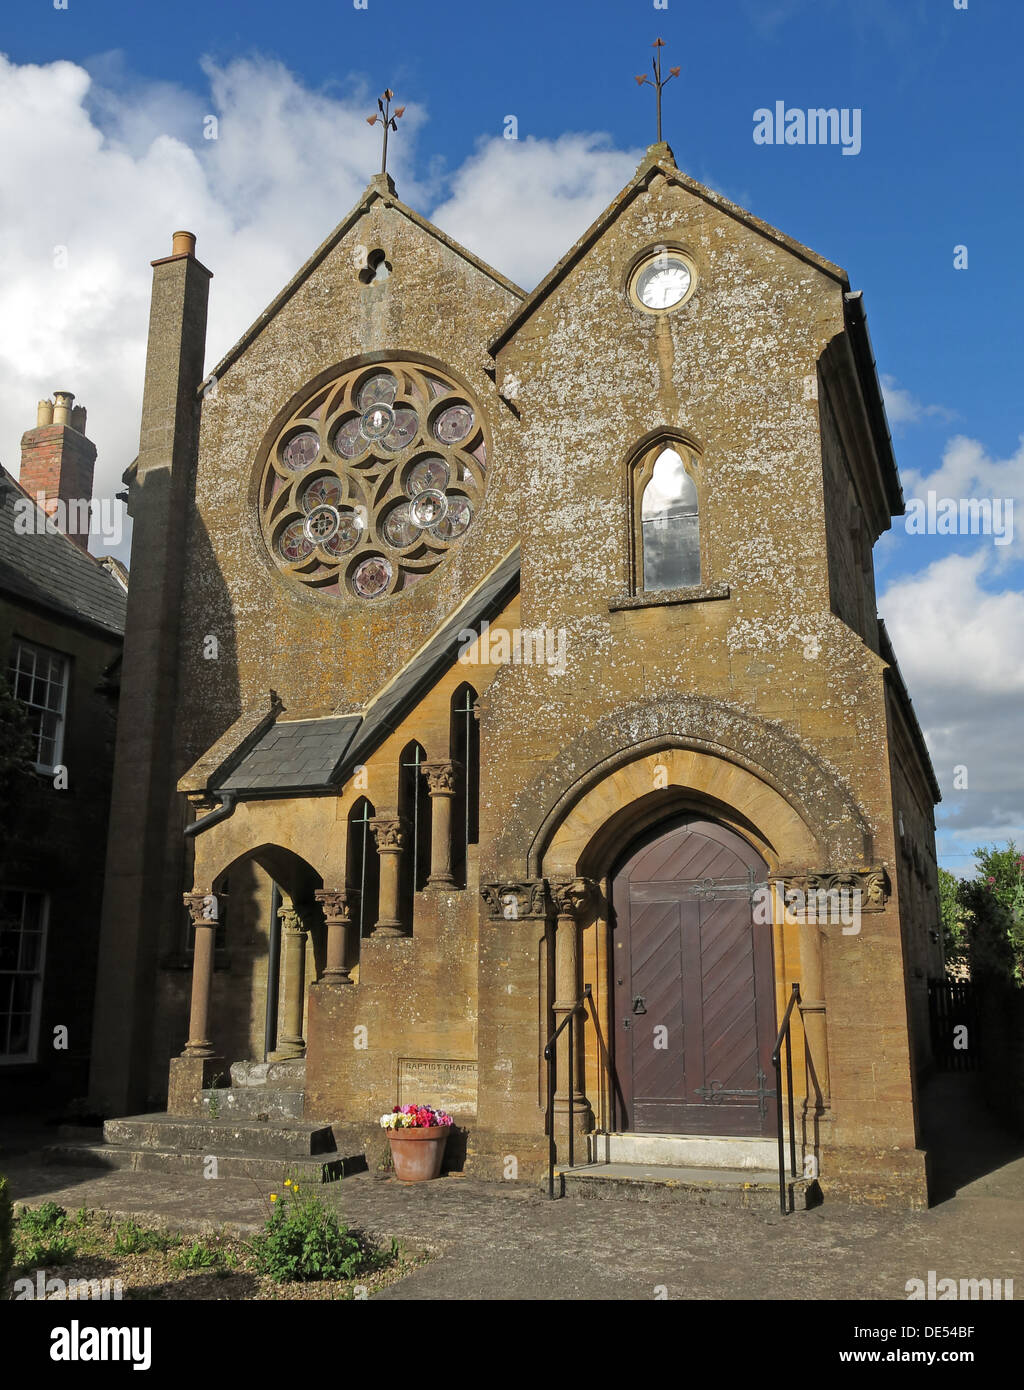 Église baptiste de Montecute, sud du Somerset, Angleterre, Royaume-Uni, dans le style anglais précoce Banque D'Images